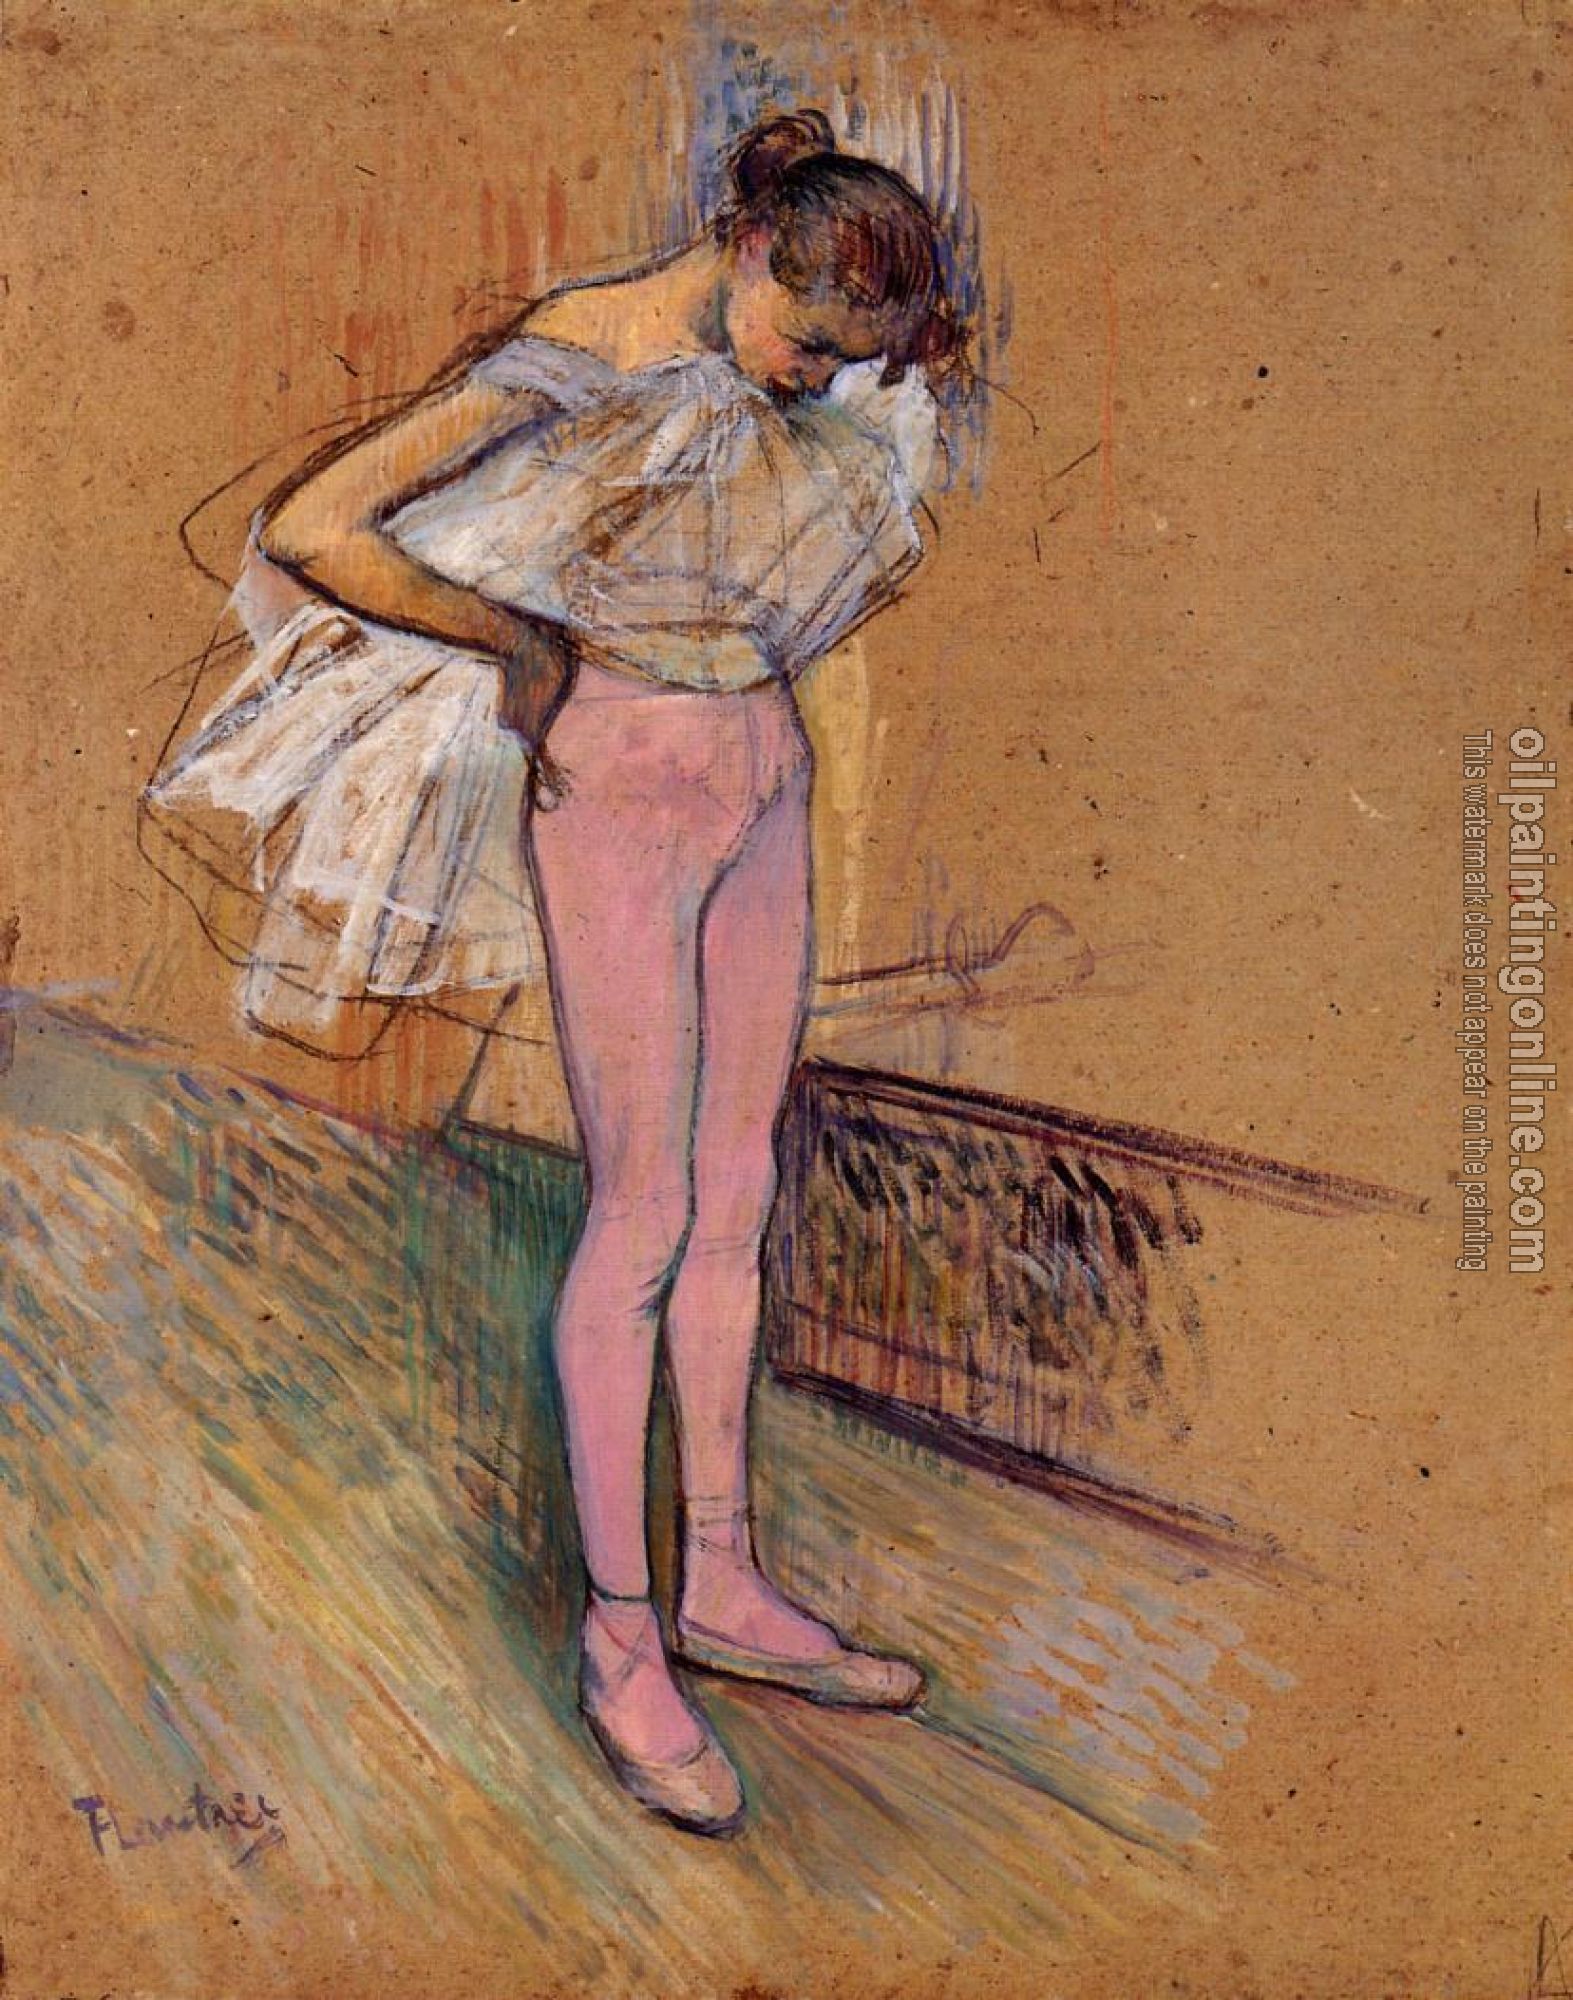 Toulouse-Lautrec, Henri de - Dancer Adjusting Her Tights